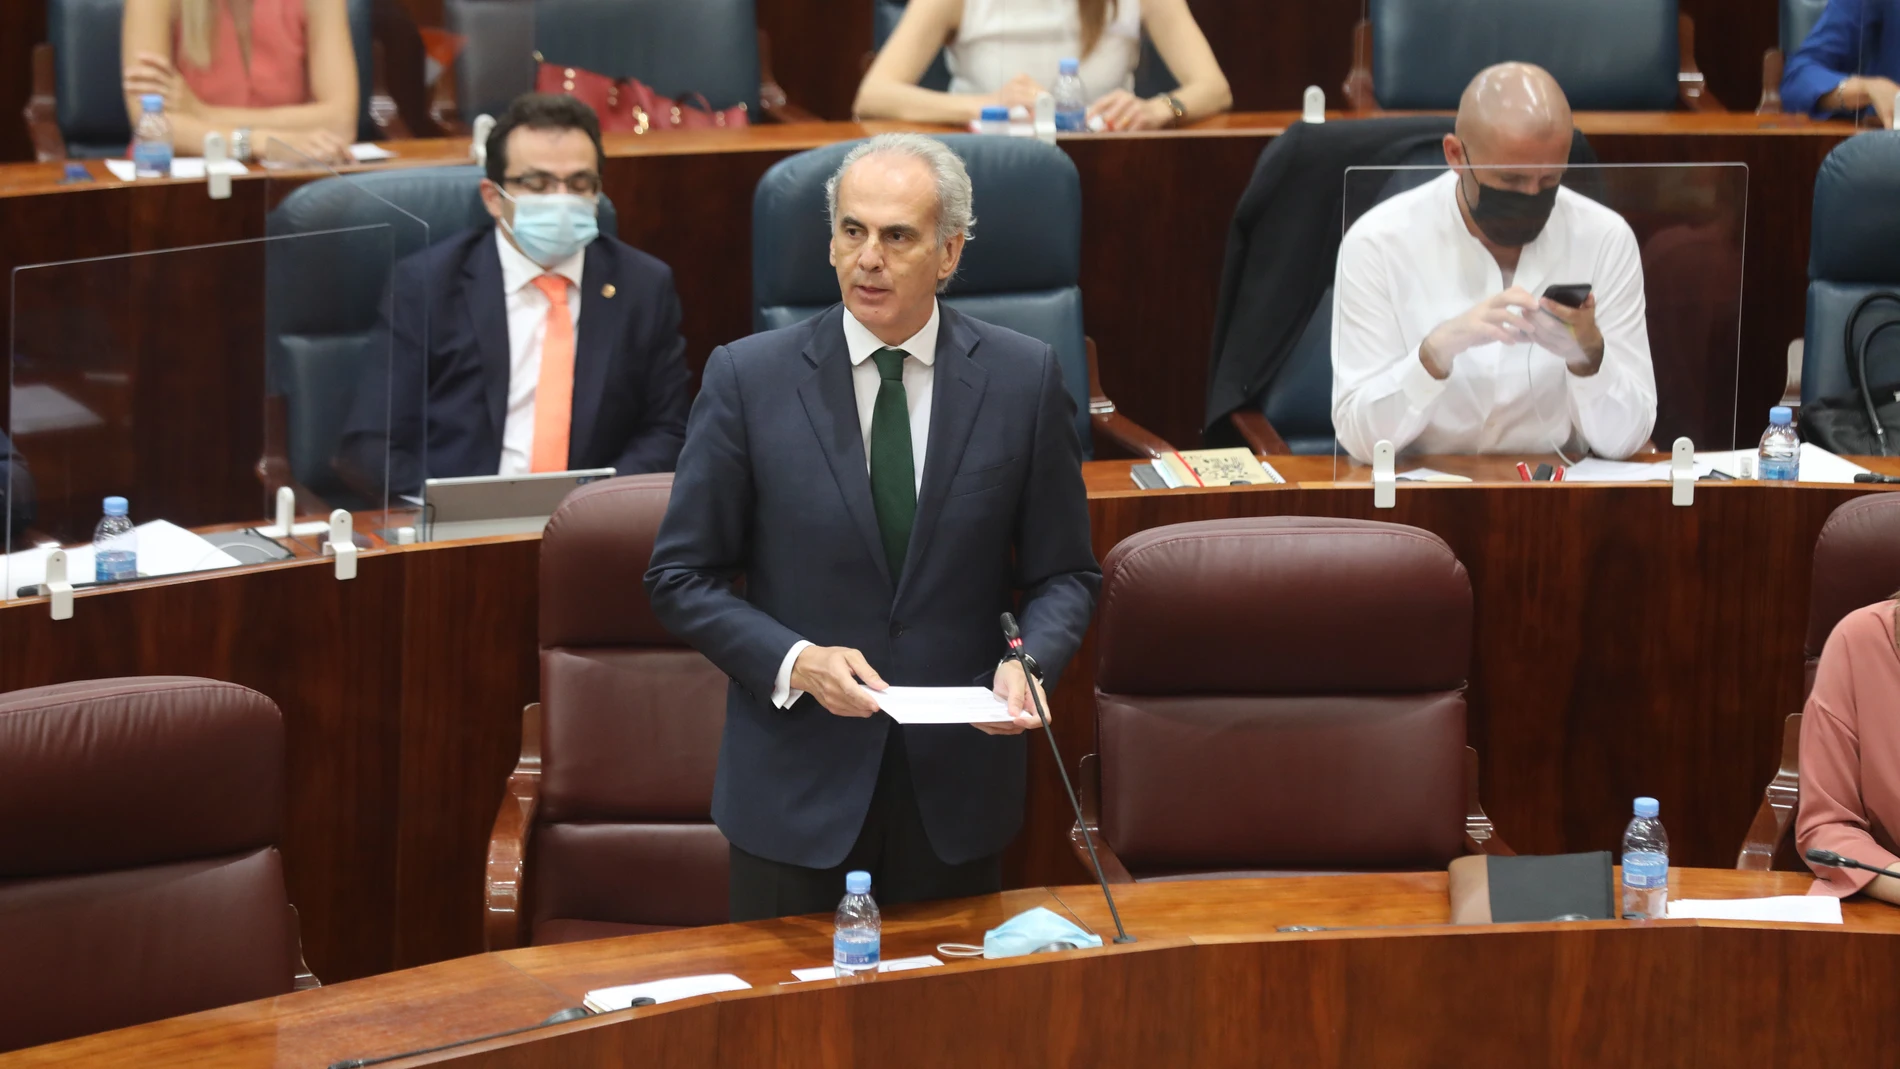 La Asamblea de Madrid debate la reprobación y cese del consejero de Sanidad